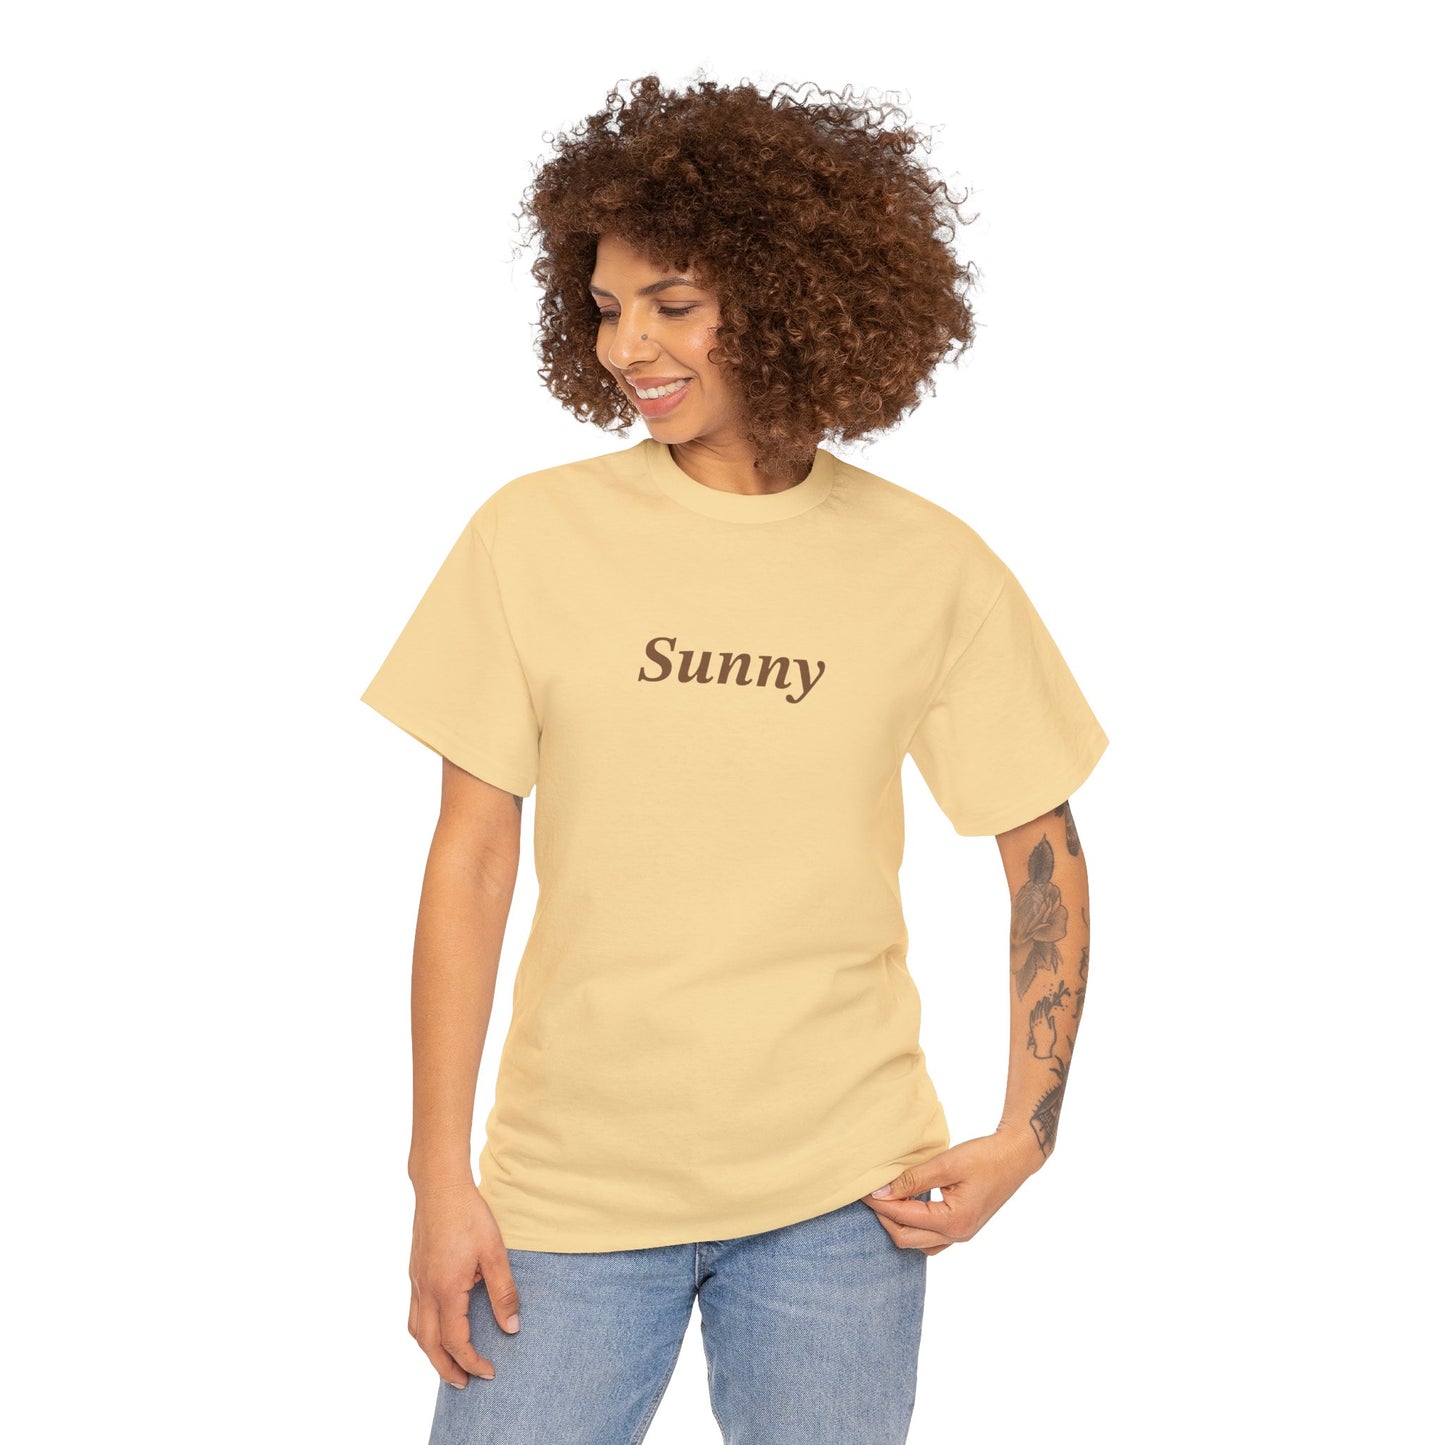 Sunny Unisex Heavy Cotton Tee